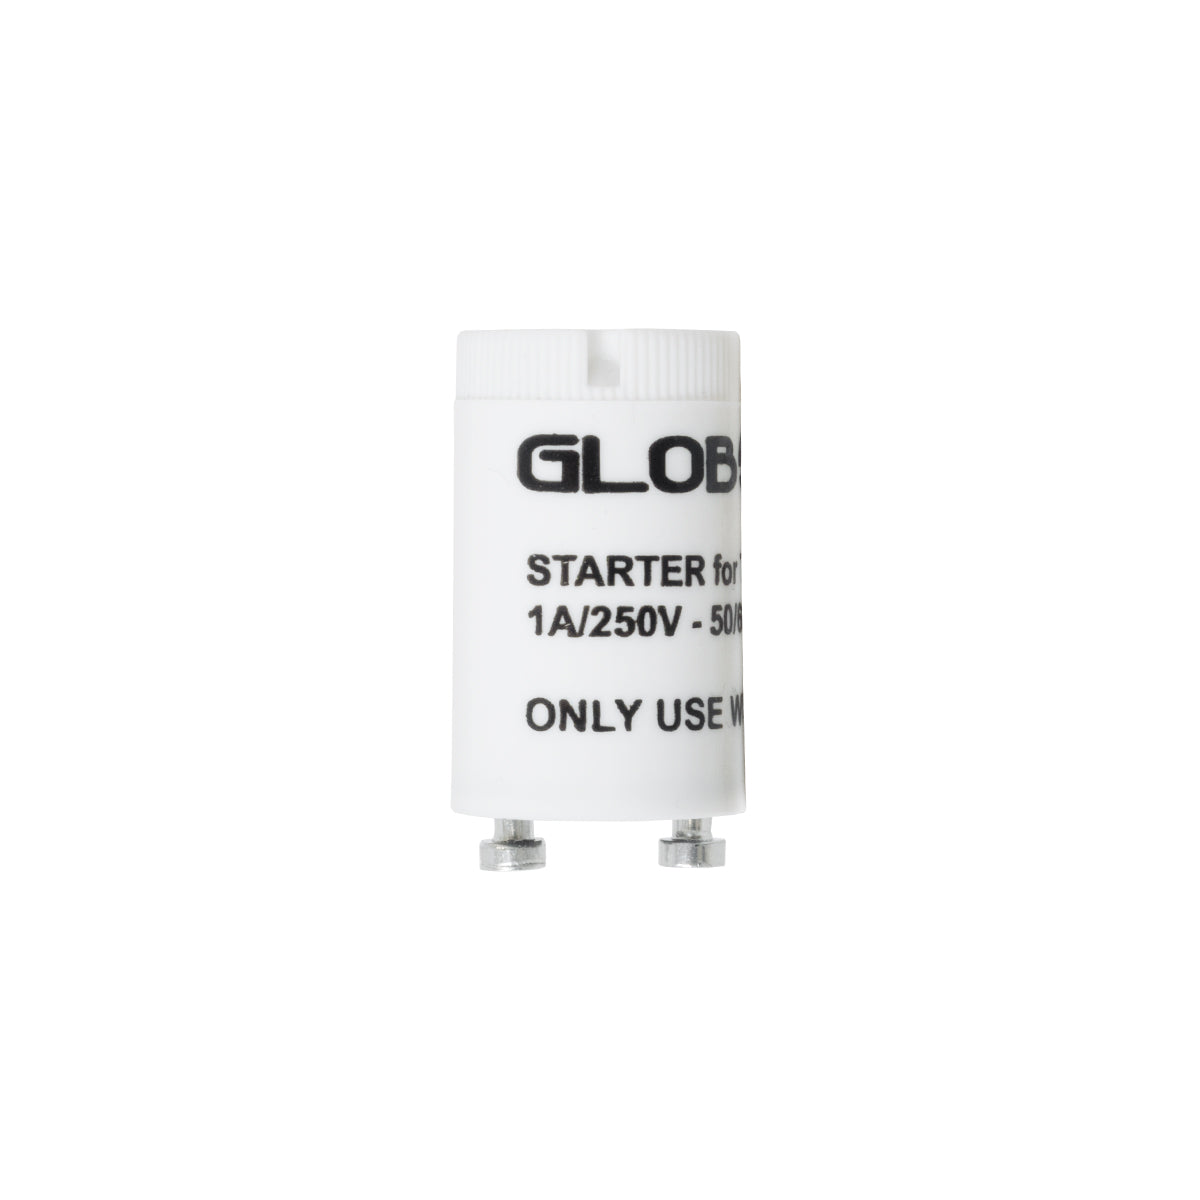 GloboStar® 99099 Starter για Λάμπες LED Τύπου Φθορισμού T8 G13 Θερμοπλαστικό Max 1A AC 250V IP20 Φ2 x Μ3.8cm - 3 Χρόνια Εγγύηση